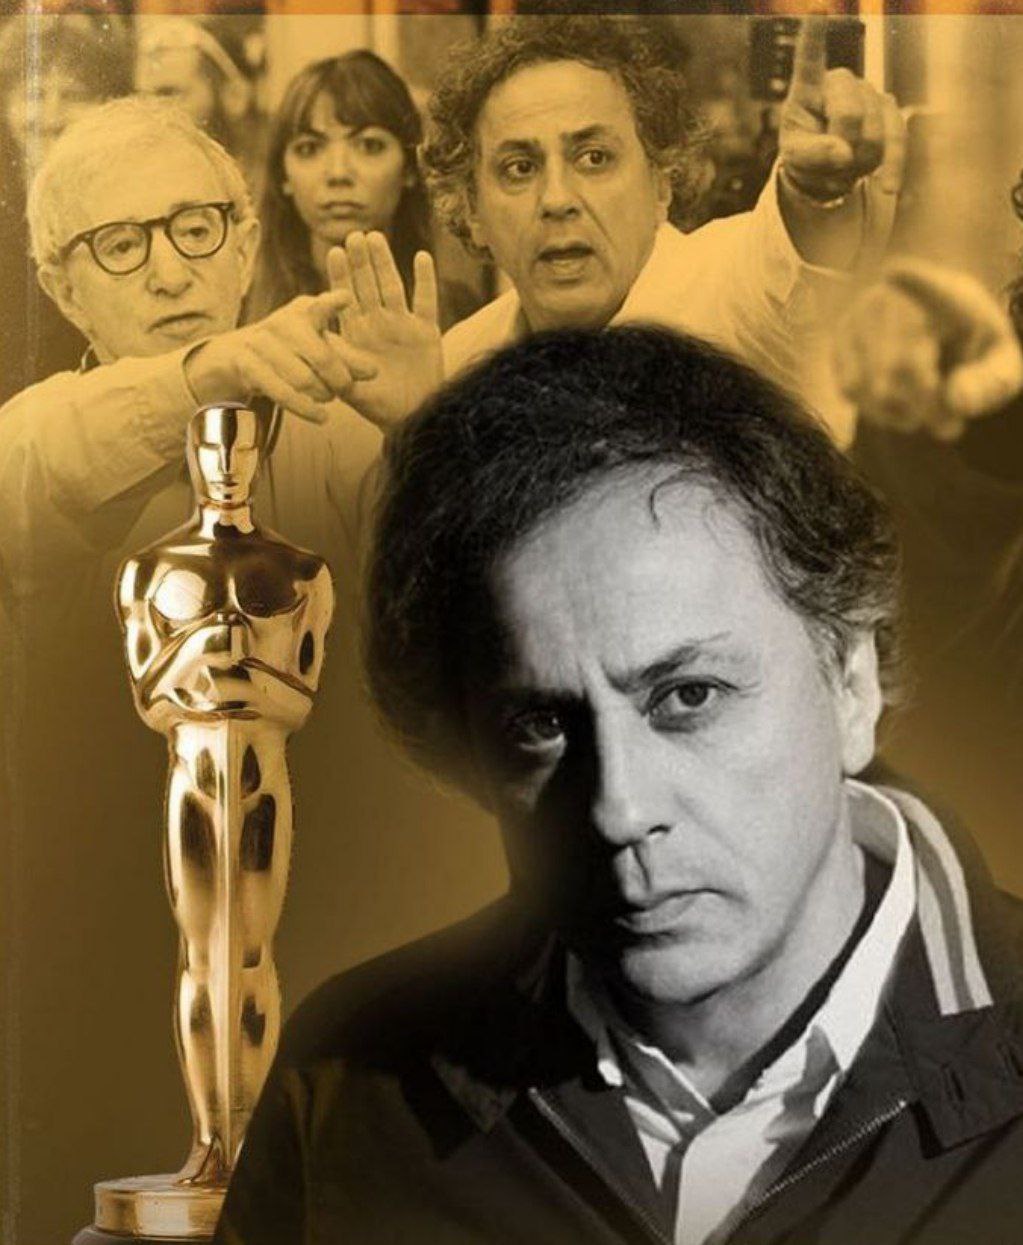 فیلمبردار ایرانی فرانسوی نامزد جایزه اسکار شد